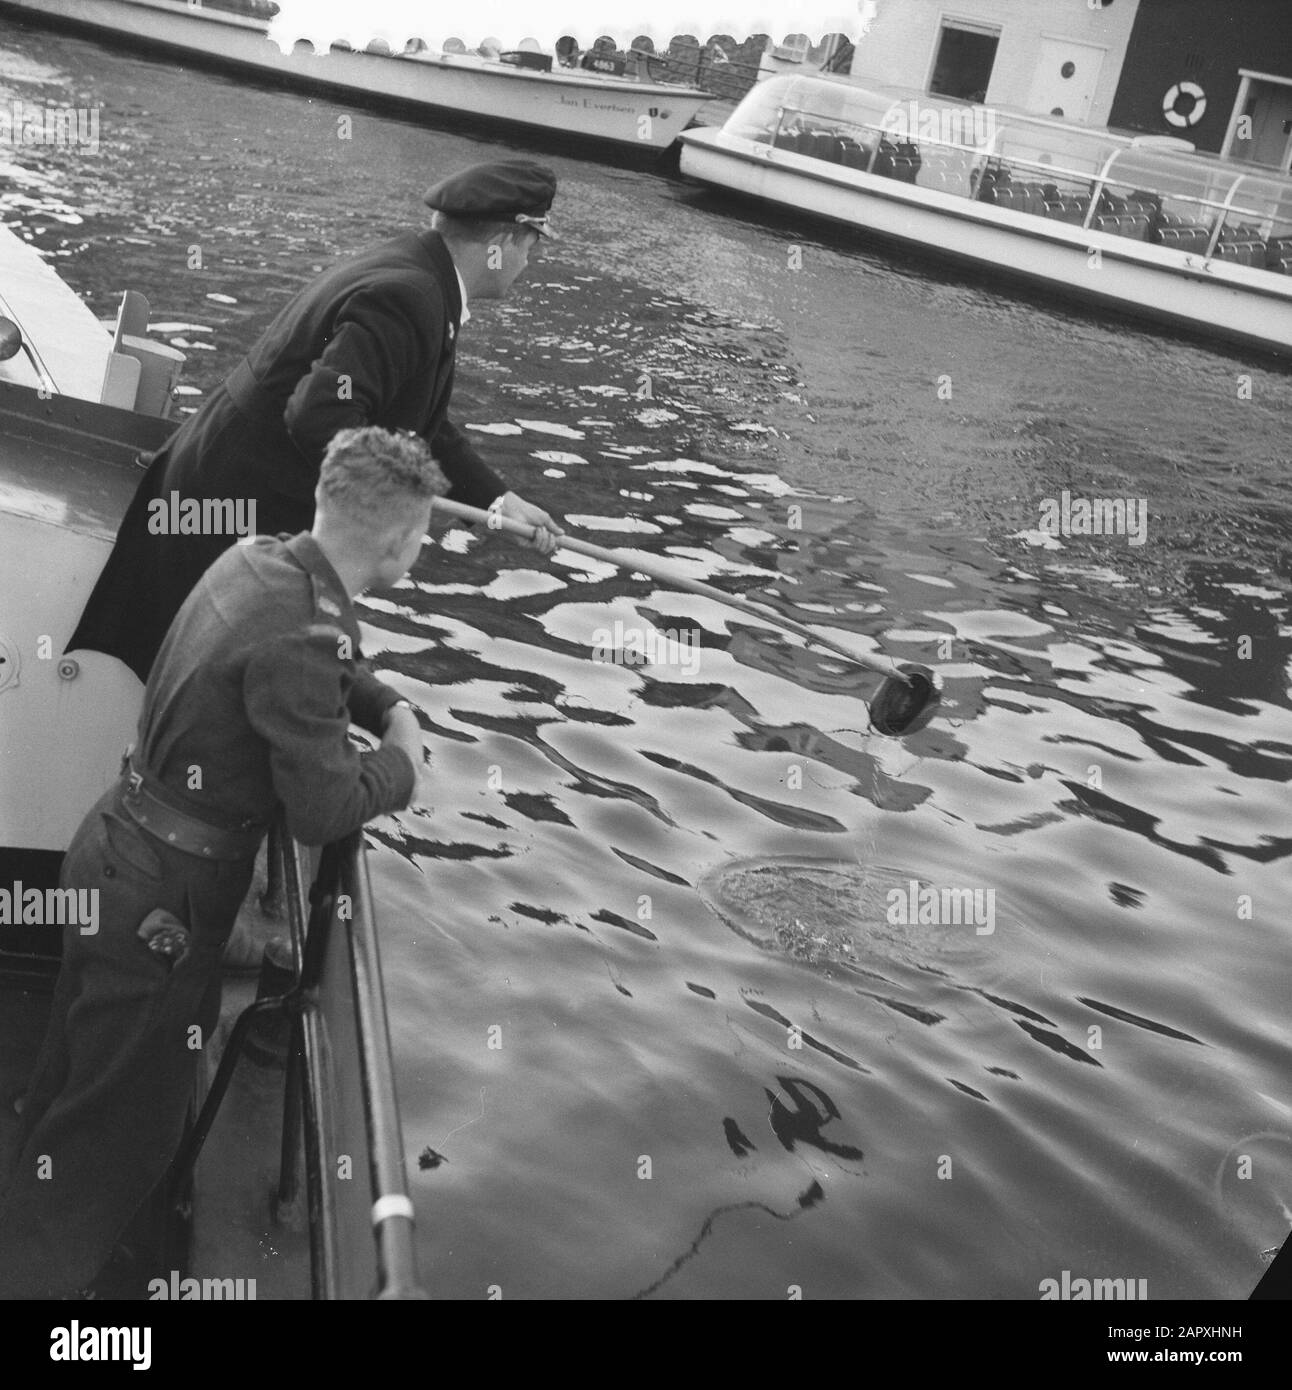 Tormenta en Amsterdam anotación: Beret van militarmente es pescado fuera del agua Fecha: 3 de noviembre de 1960 ubicación: Amsterdam, Noord-Holland palabras clave: Tormentas Foto de stock